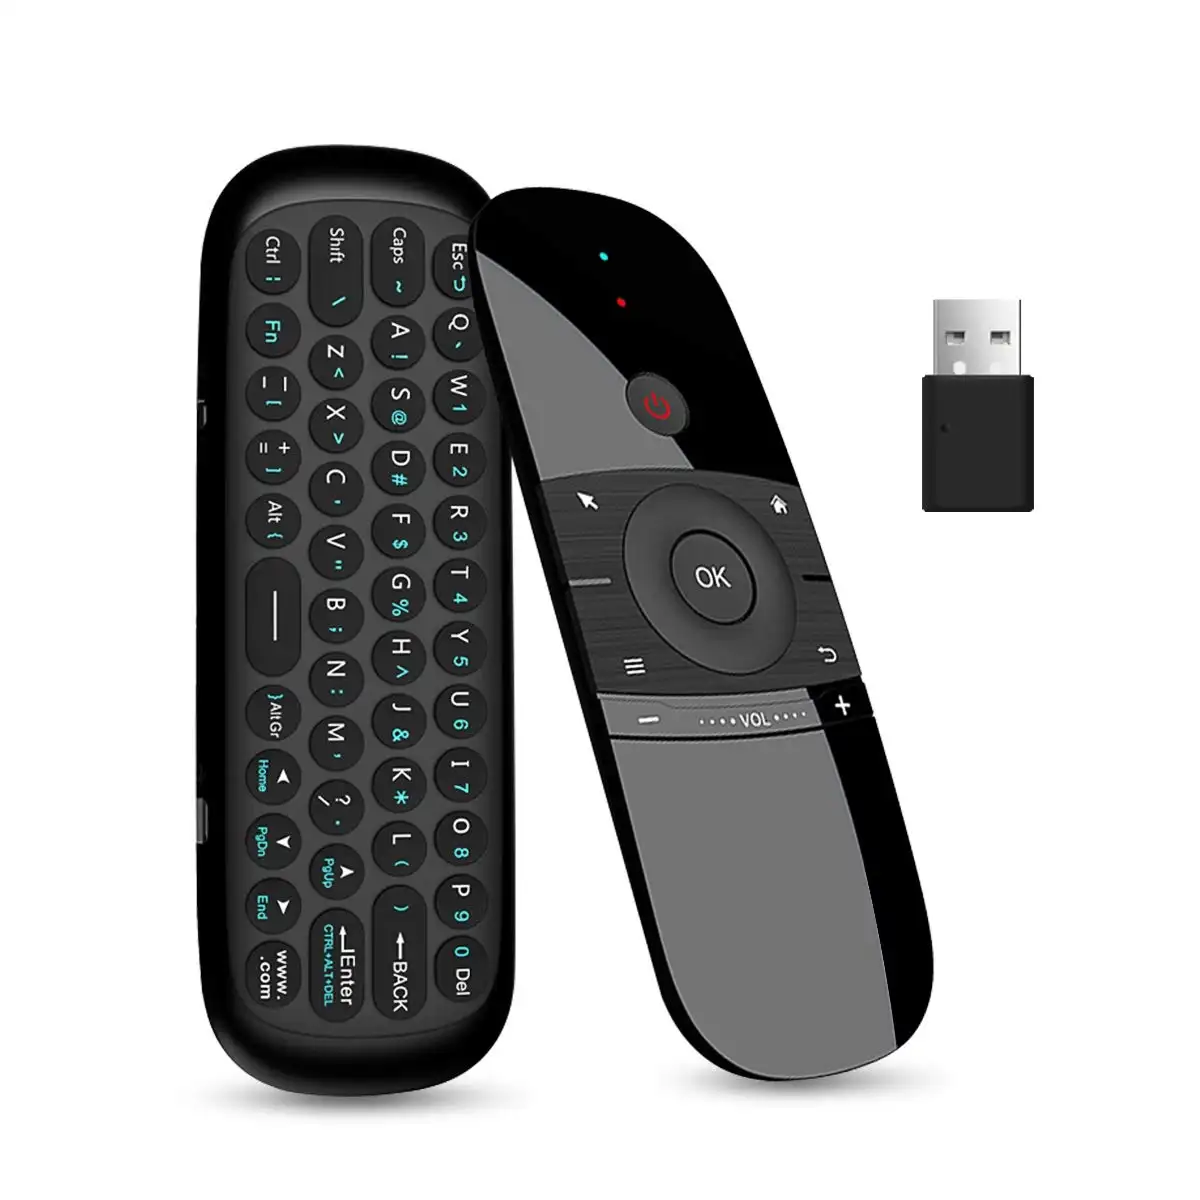 W1 controle remoto para teclado air mouse 2.4g, sensor de movimento sem fio para smart tv, android, tv box, pc